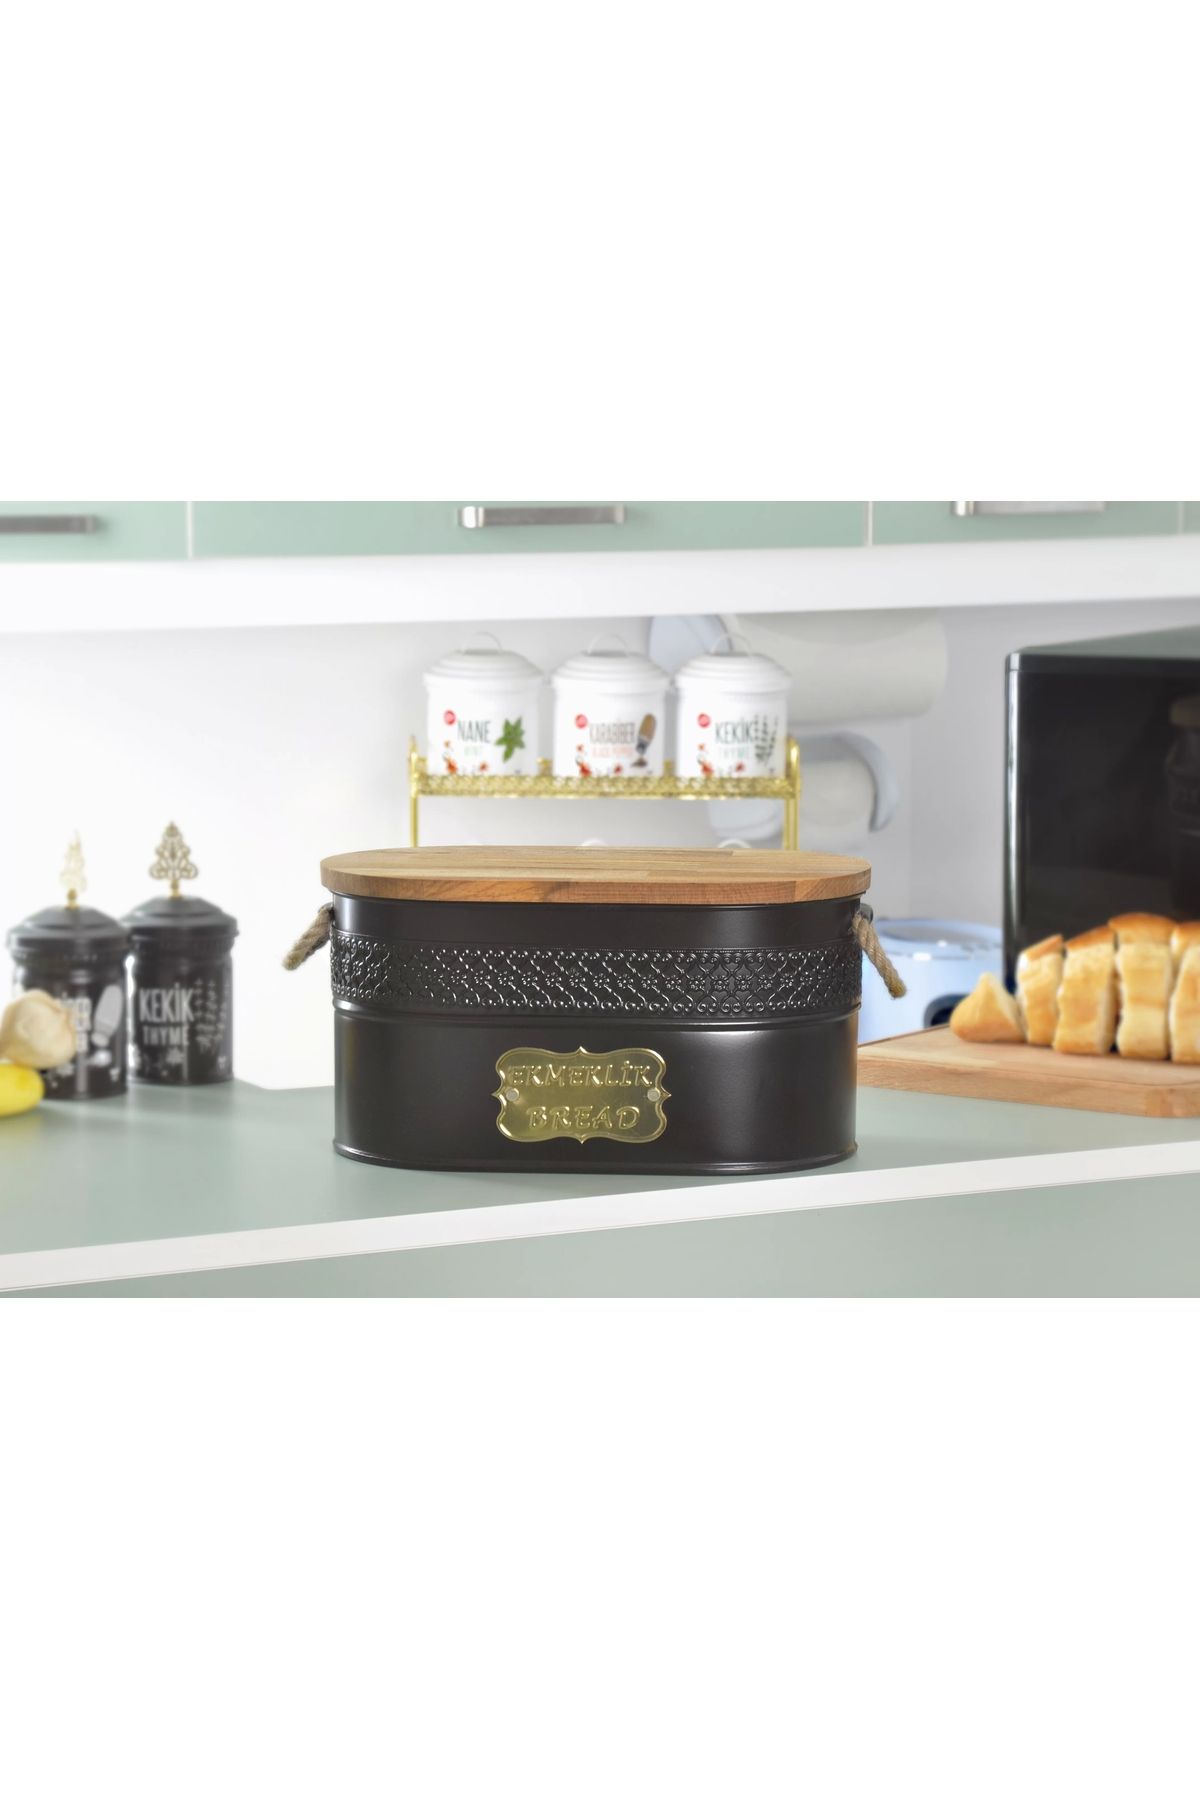 Evistro Metal Ekmeklik Ahşap Kapaklı Hasır Kulplu Ekmek Kutusu Siyah